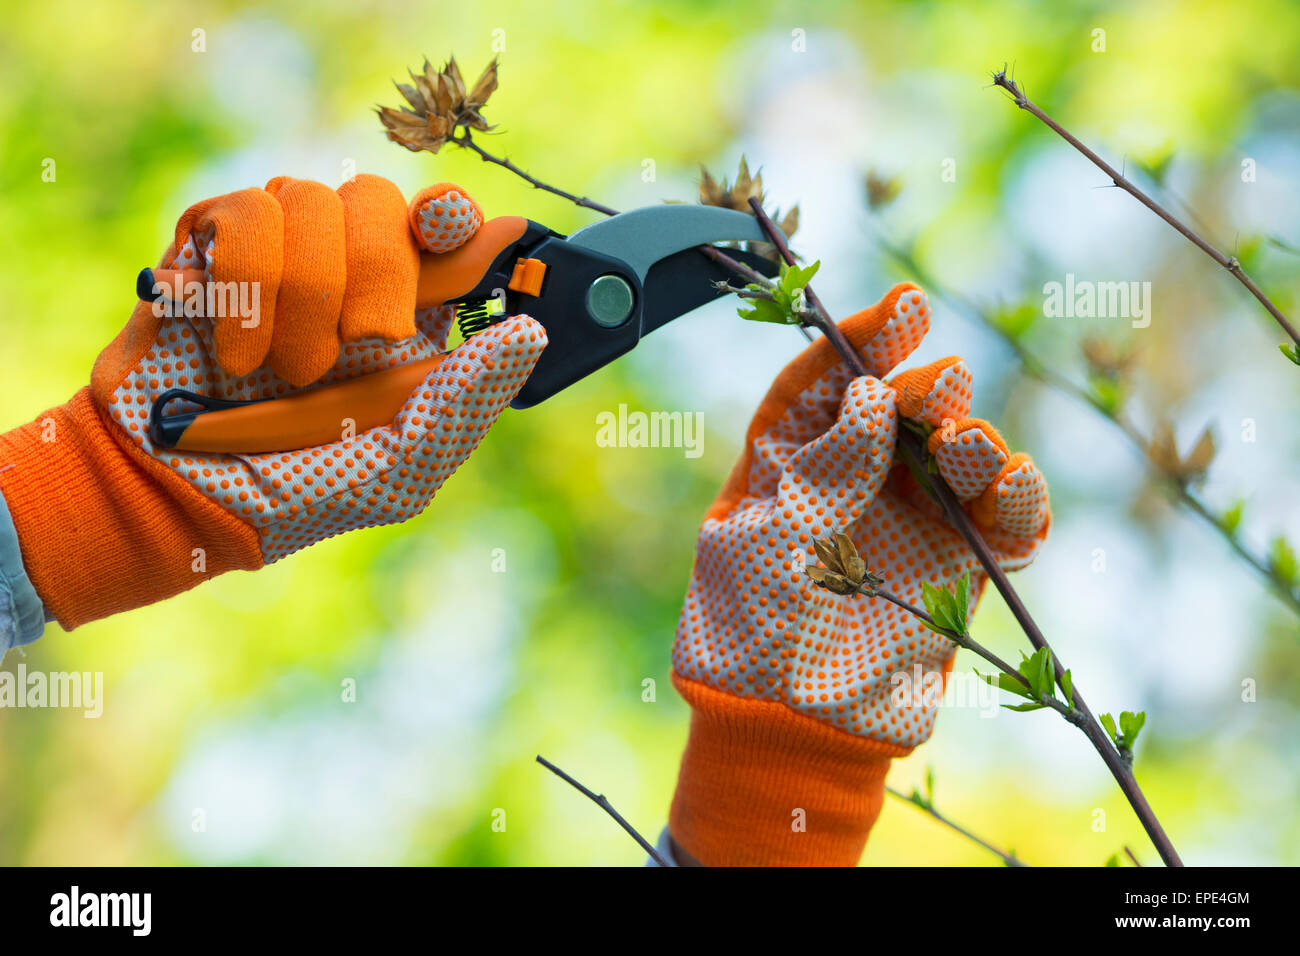 Jardinería, poda de plantas Hibiscus, guantes y Cizallas Foto de stock